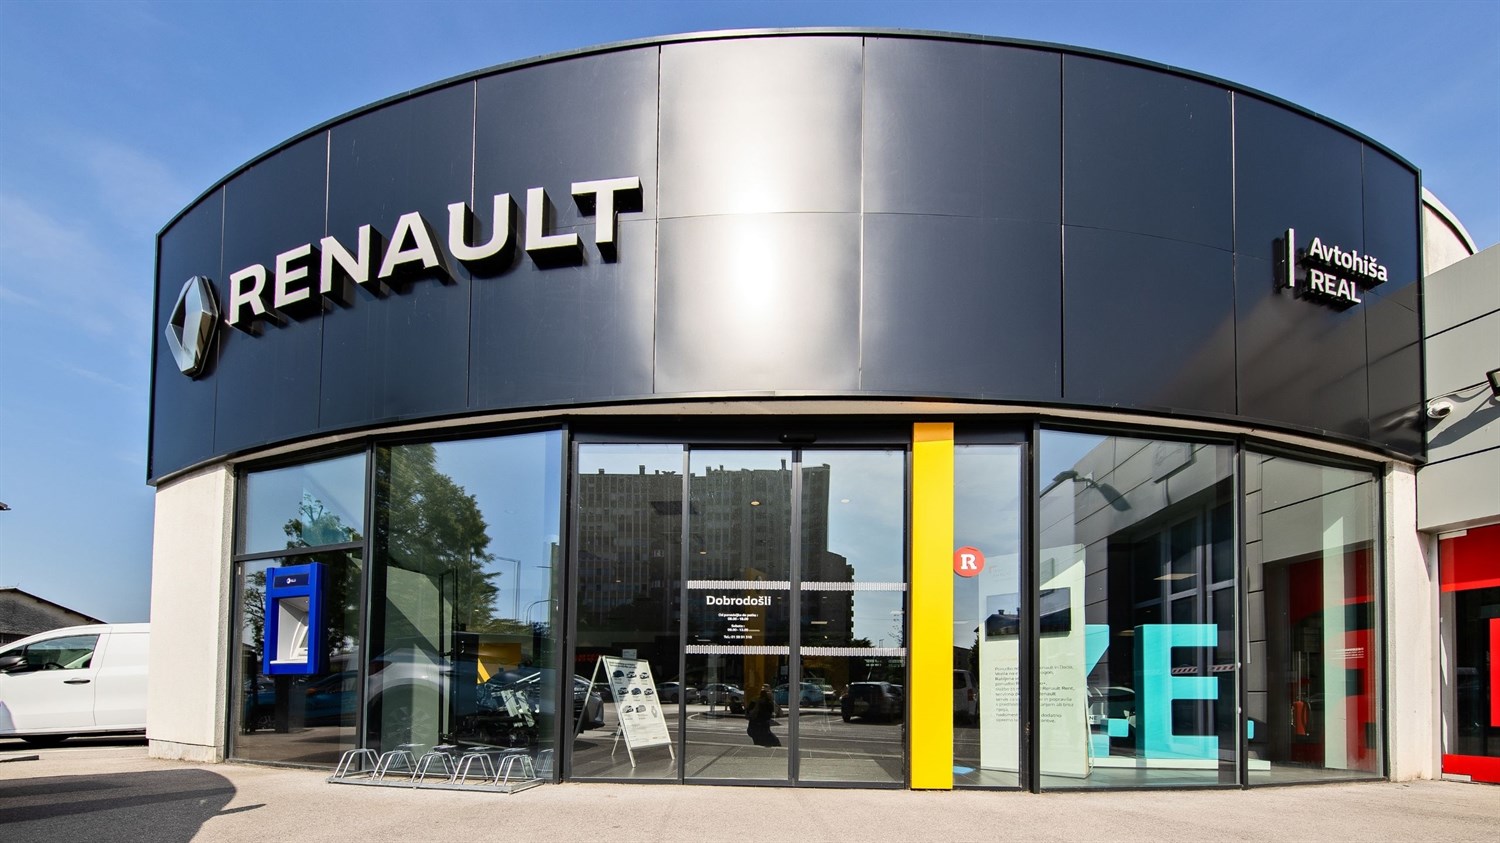 Avtohiša Real - prodaja in servis vozil Renault